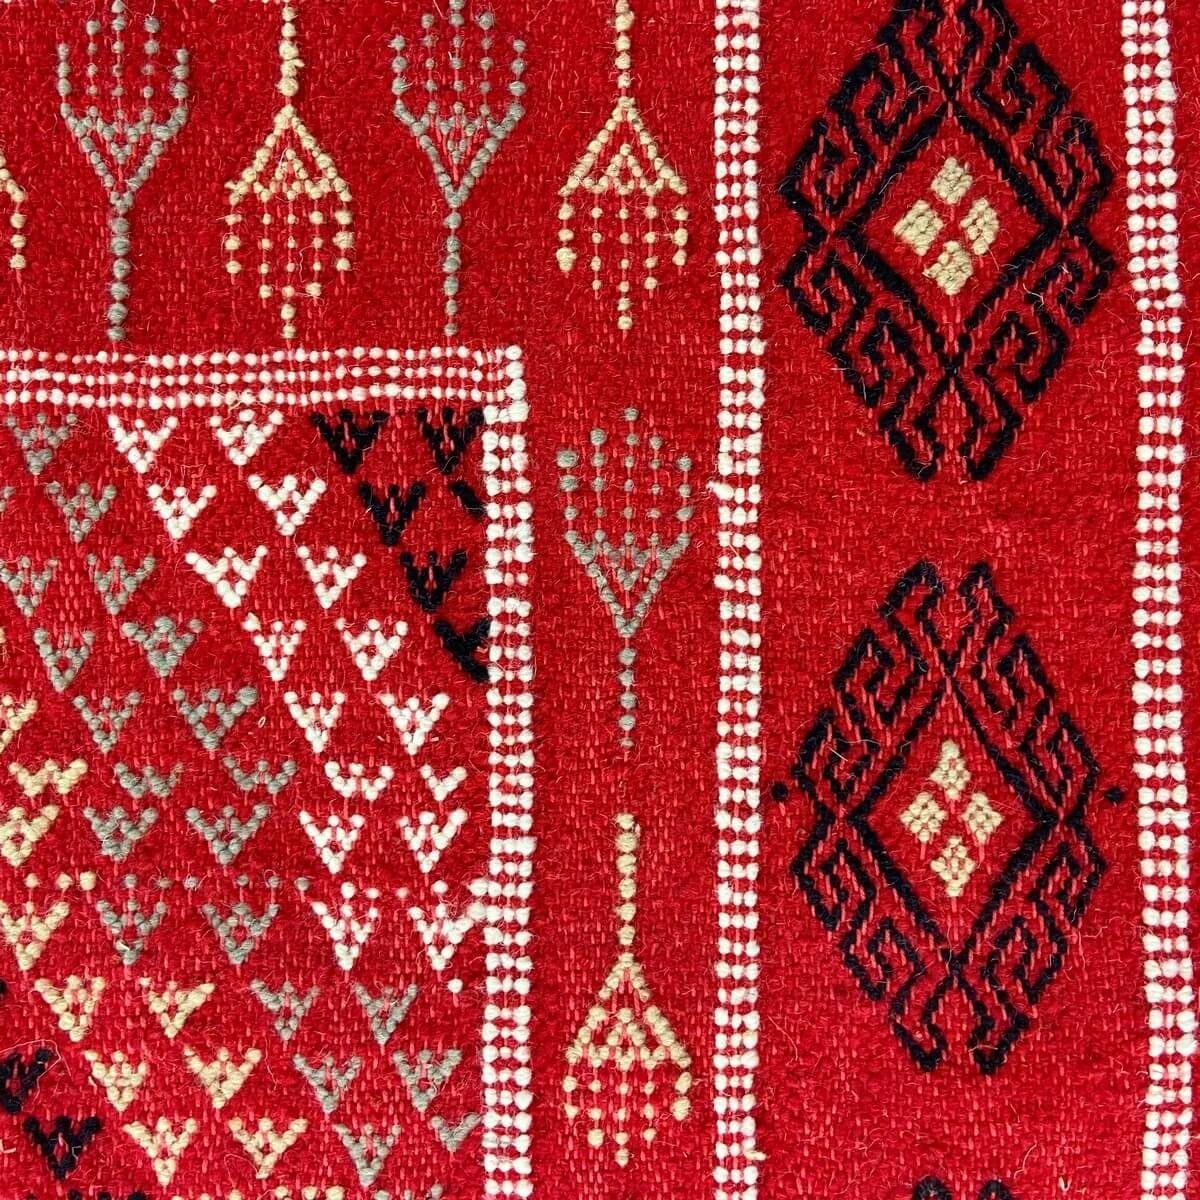 Berber tapijt Tapijt Margoum Eklil 171x238 cm Rood (Handgeweven, Wol, Tunesië) Tunesisch Margoum Tapijt uit de stad Kairouan. Re